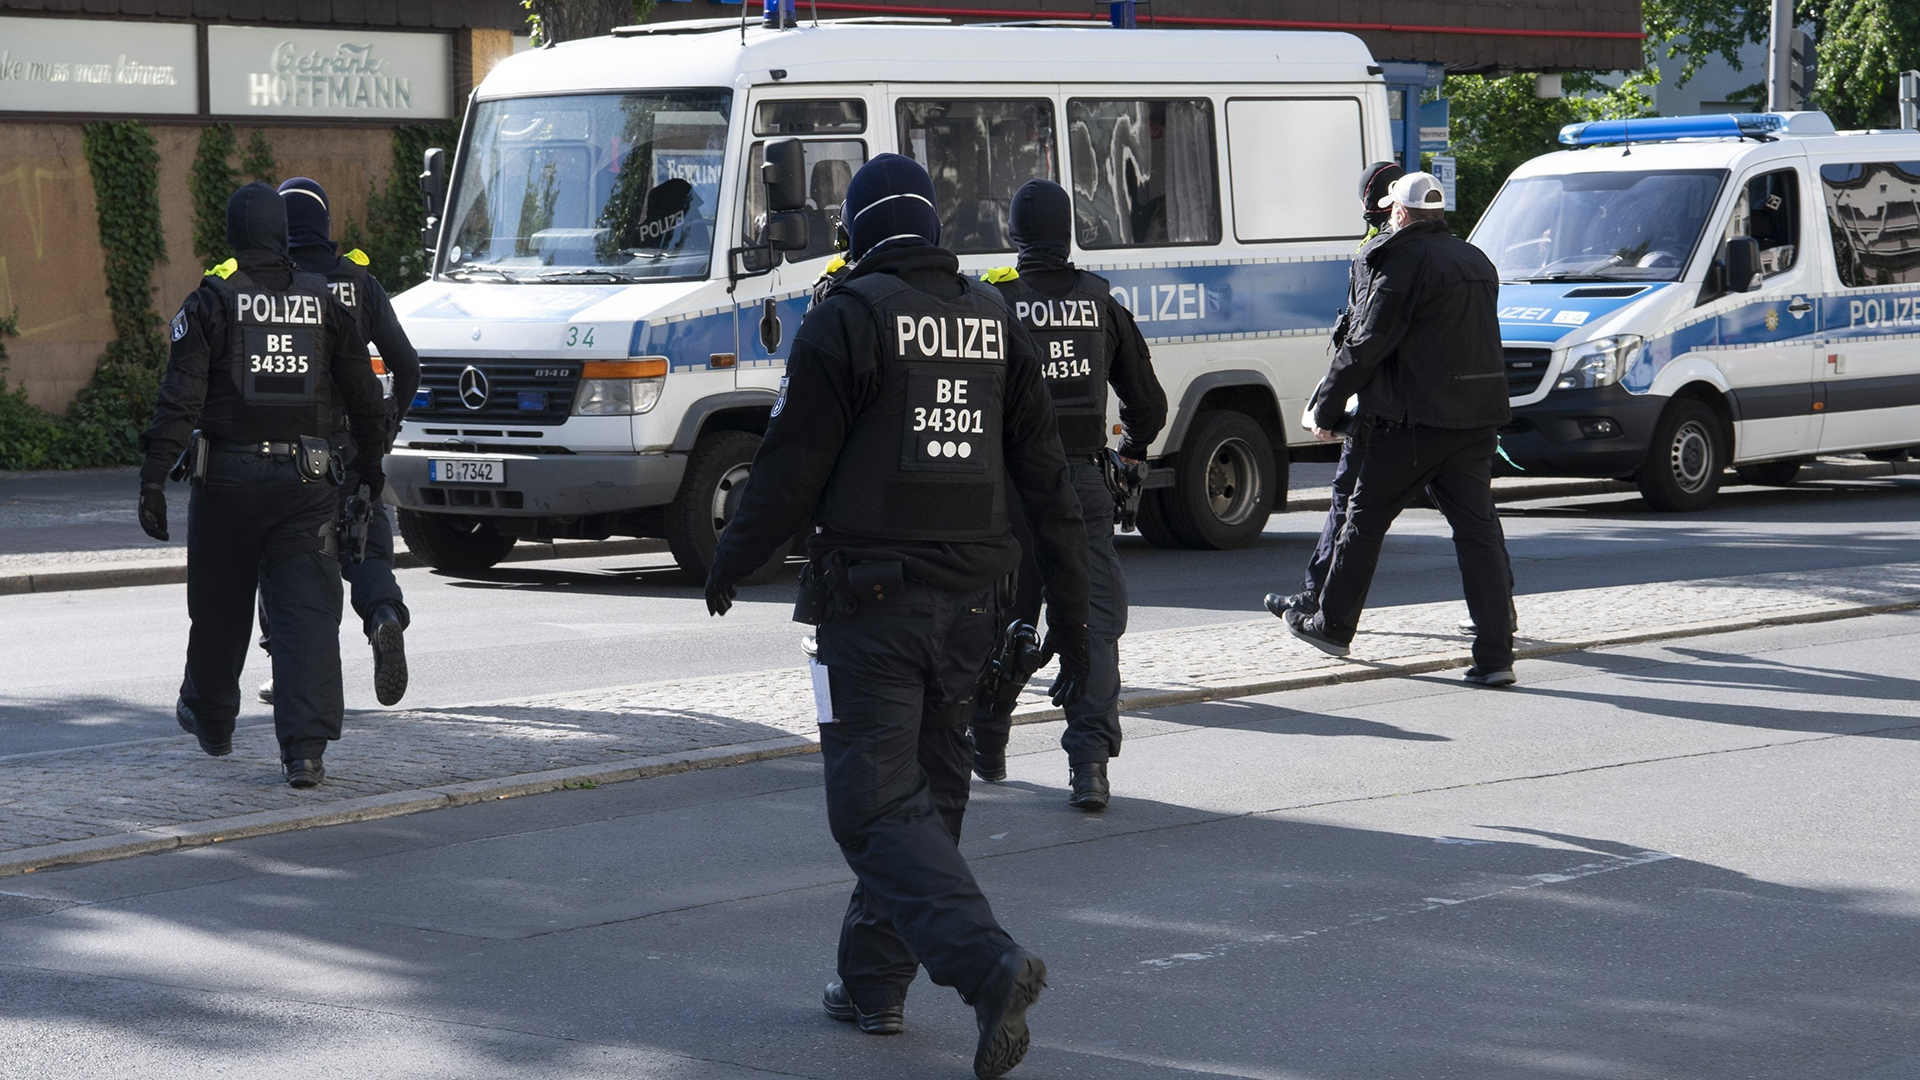 Polizisten laufen bei einer Razzia zu ihren Einsatzfahrzeugen, Archiv | picture alliance/dpa/dpa-Zentral